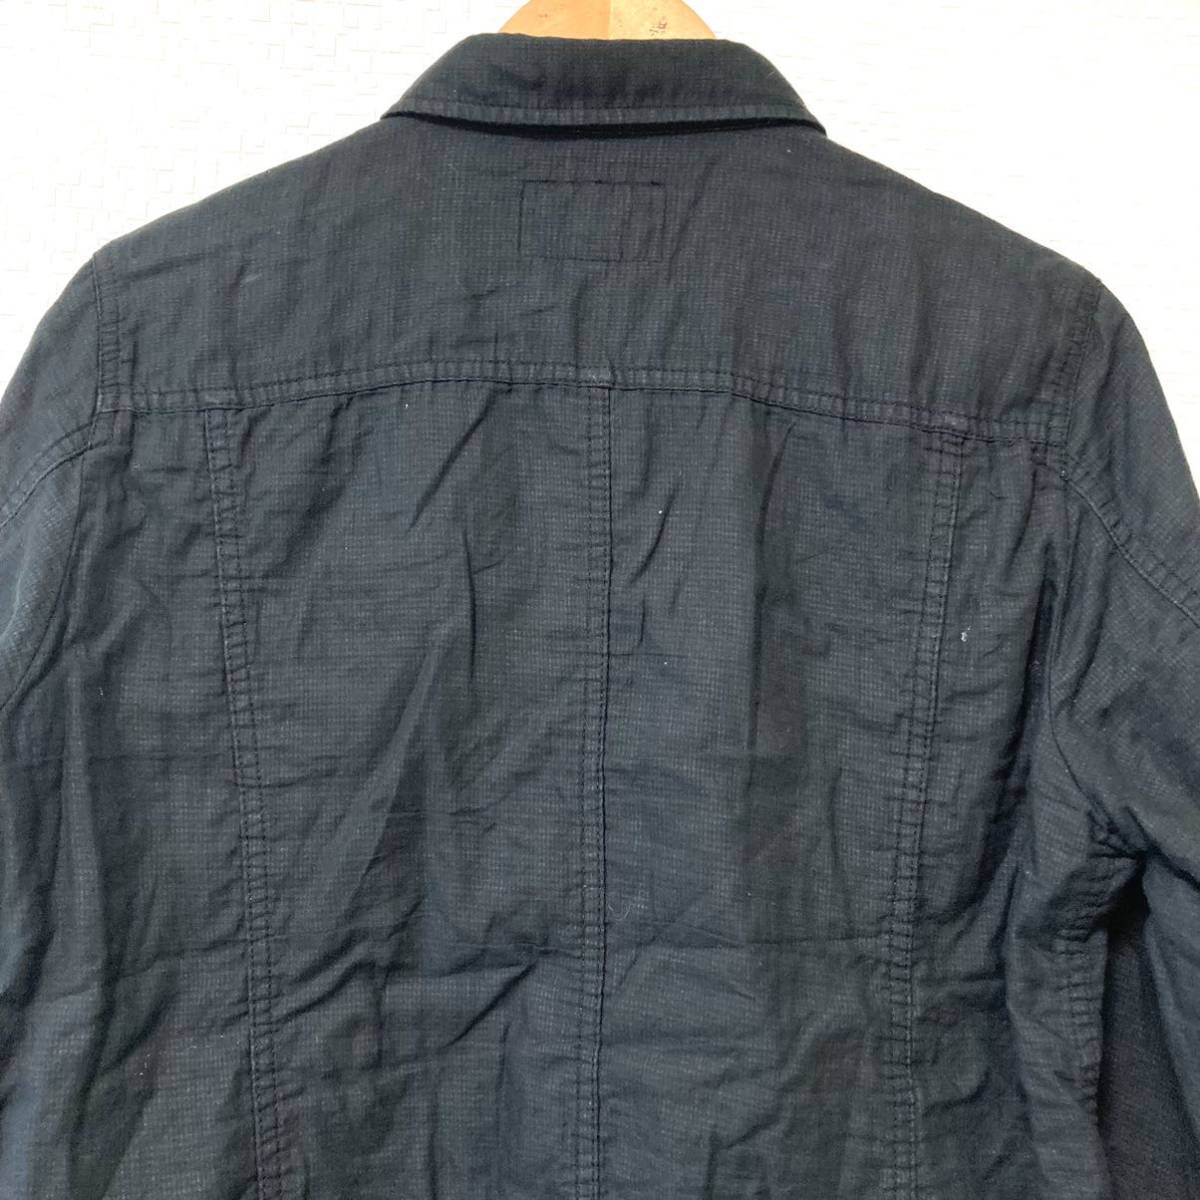 【NICOLE】ニコル ミリタリー 長袖 シャツ ジャケット 上着 綿100% 無地 カジュアル 羽織り ブラック 黒 メンズ 紳士 サイズ48/1473UU_画像5